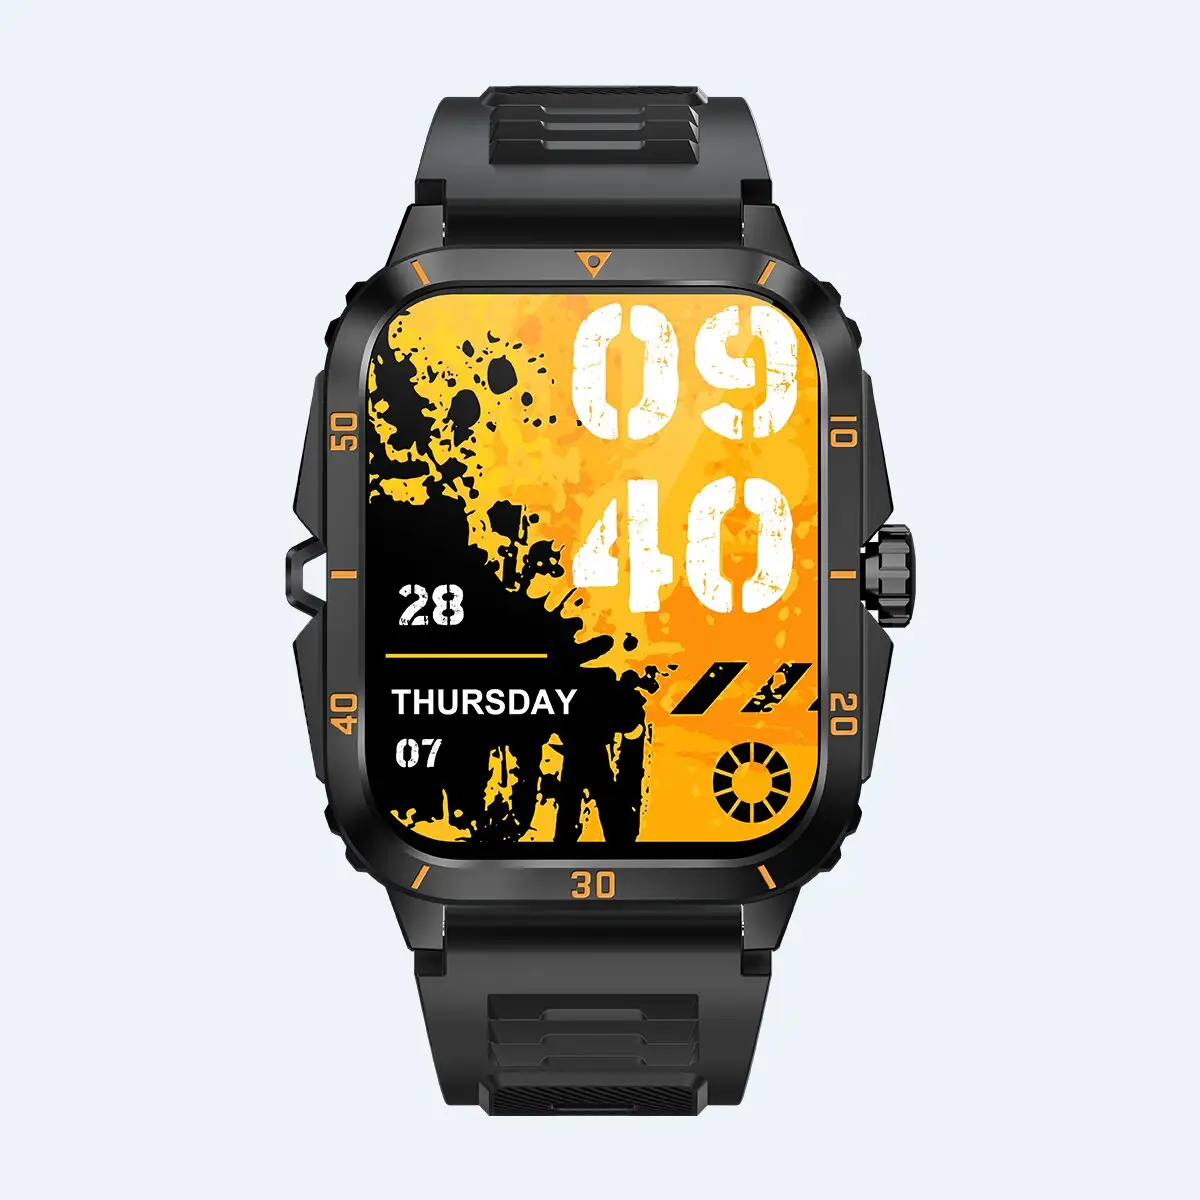 Llamada directa de fábrica Cámara Video Salud Reloj Marca Logotipo propio Relojes Fitness Digital Deporte al aire libre Smartwatch para hombres Pulsera